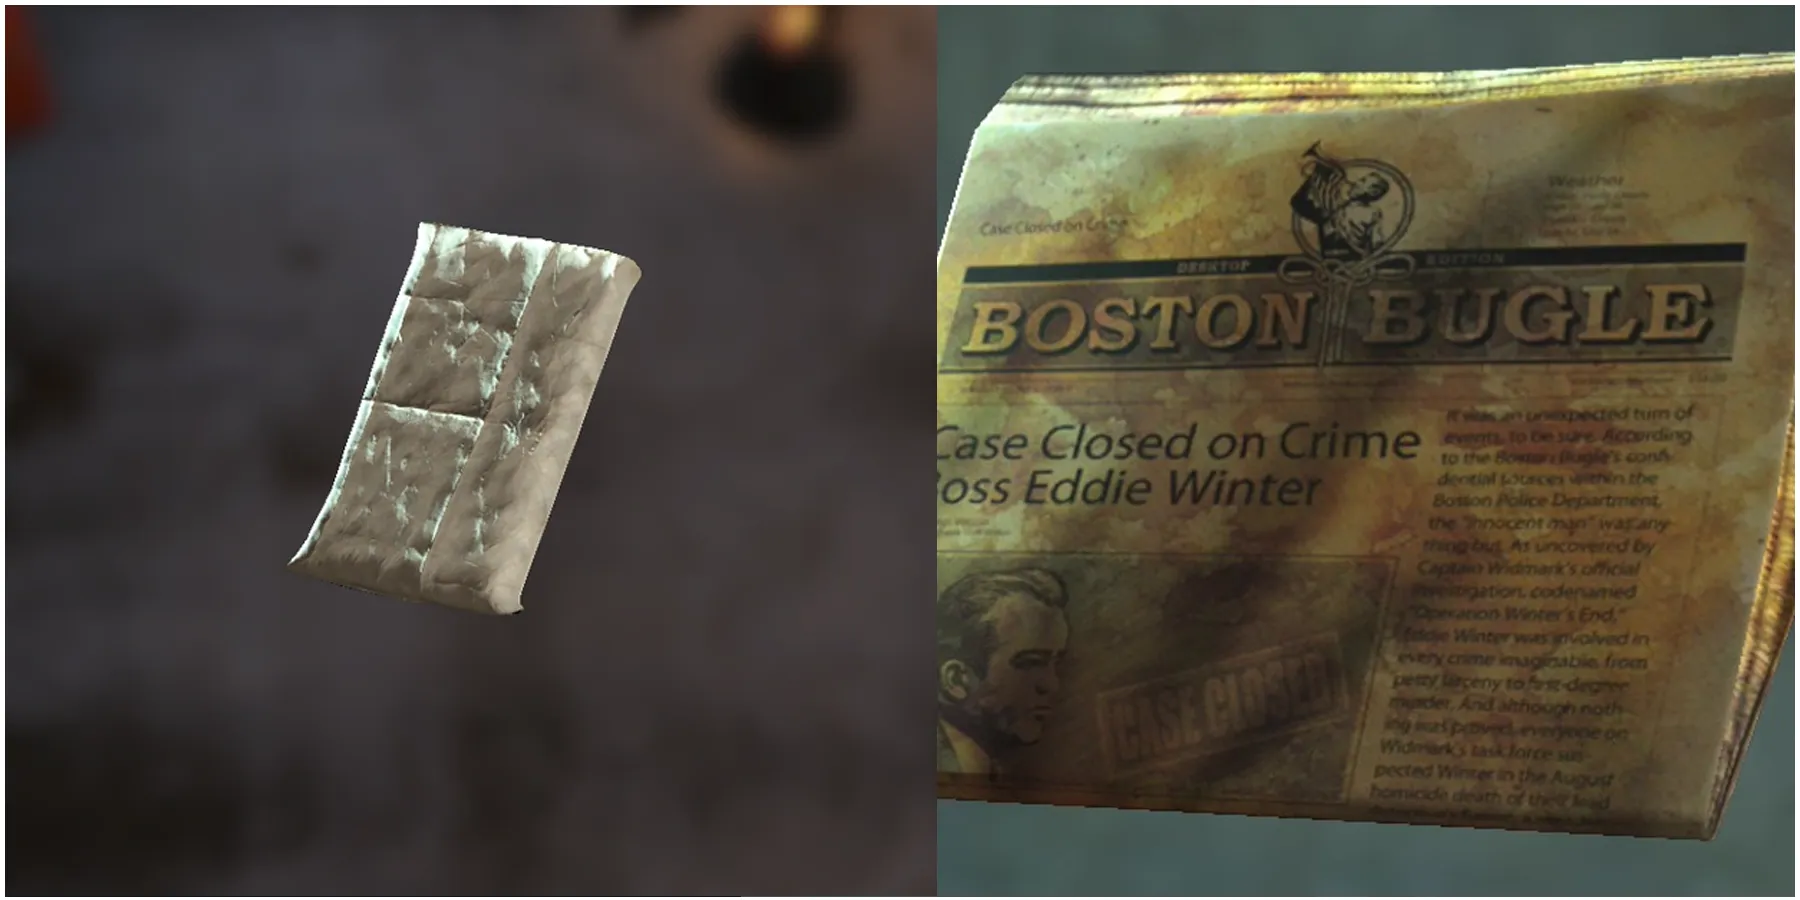 Boston Bugle Sigillato